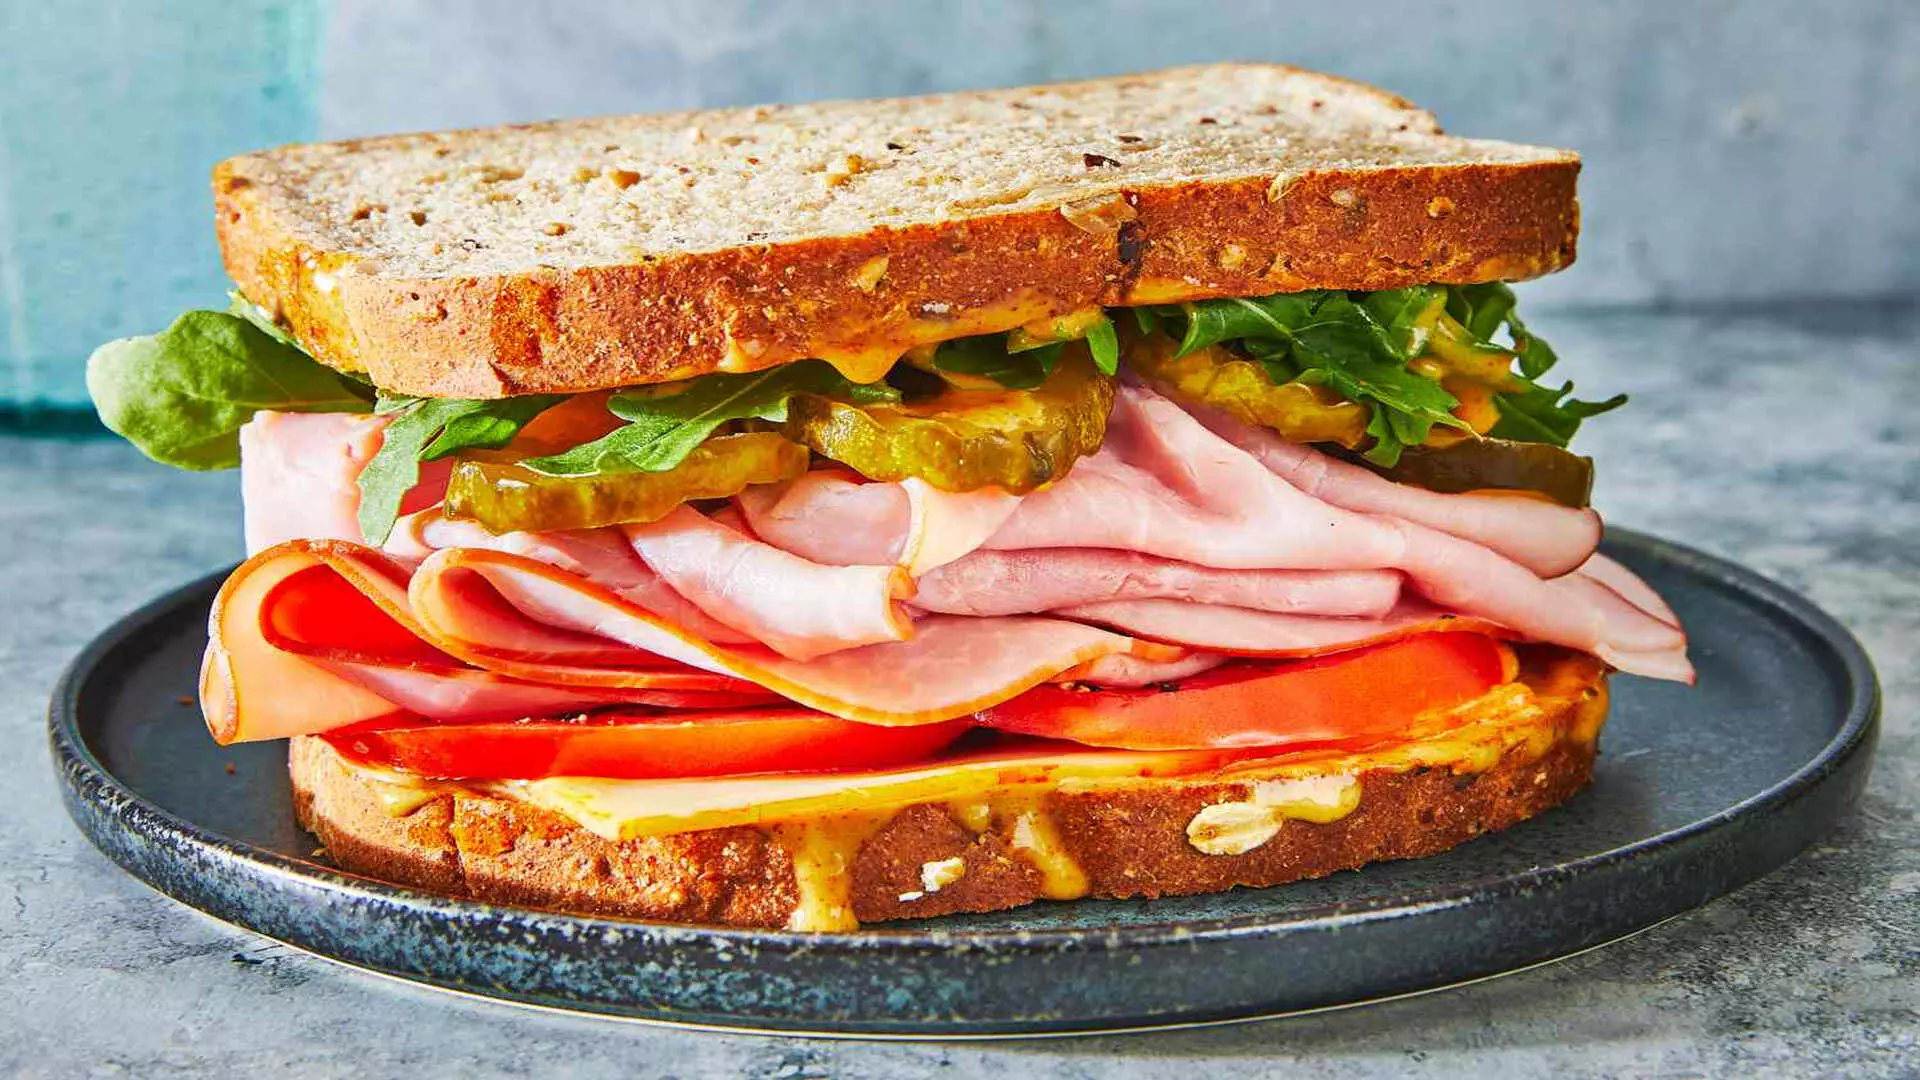 सदाबहार सैंडविच हमेशा एक उत्तम विकल्प, रेसिपी